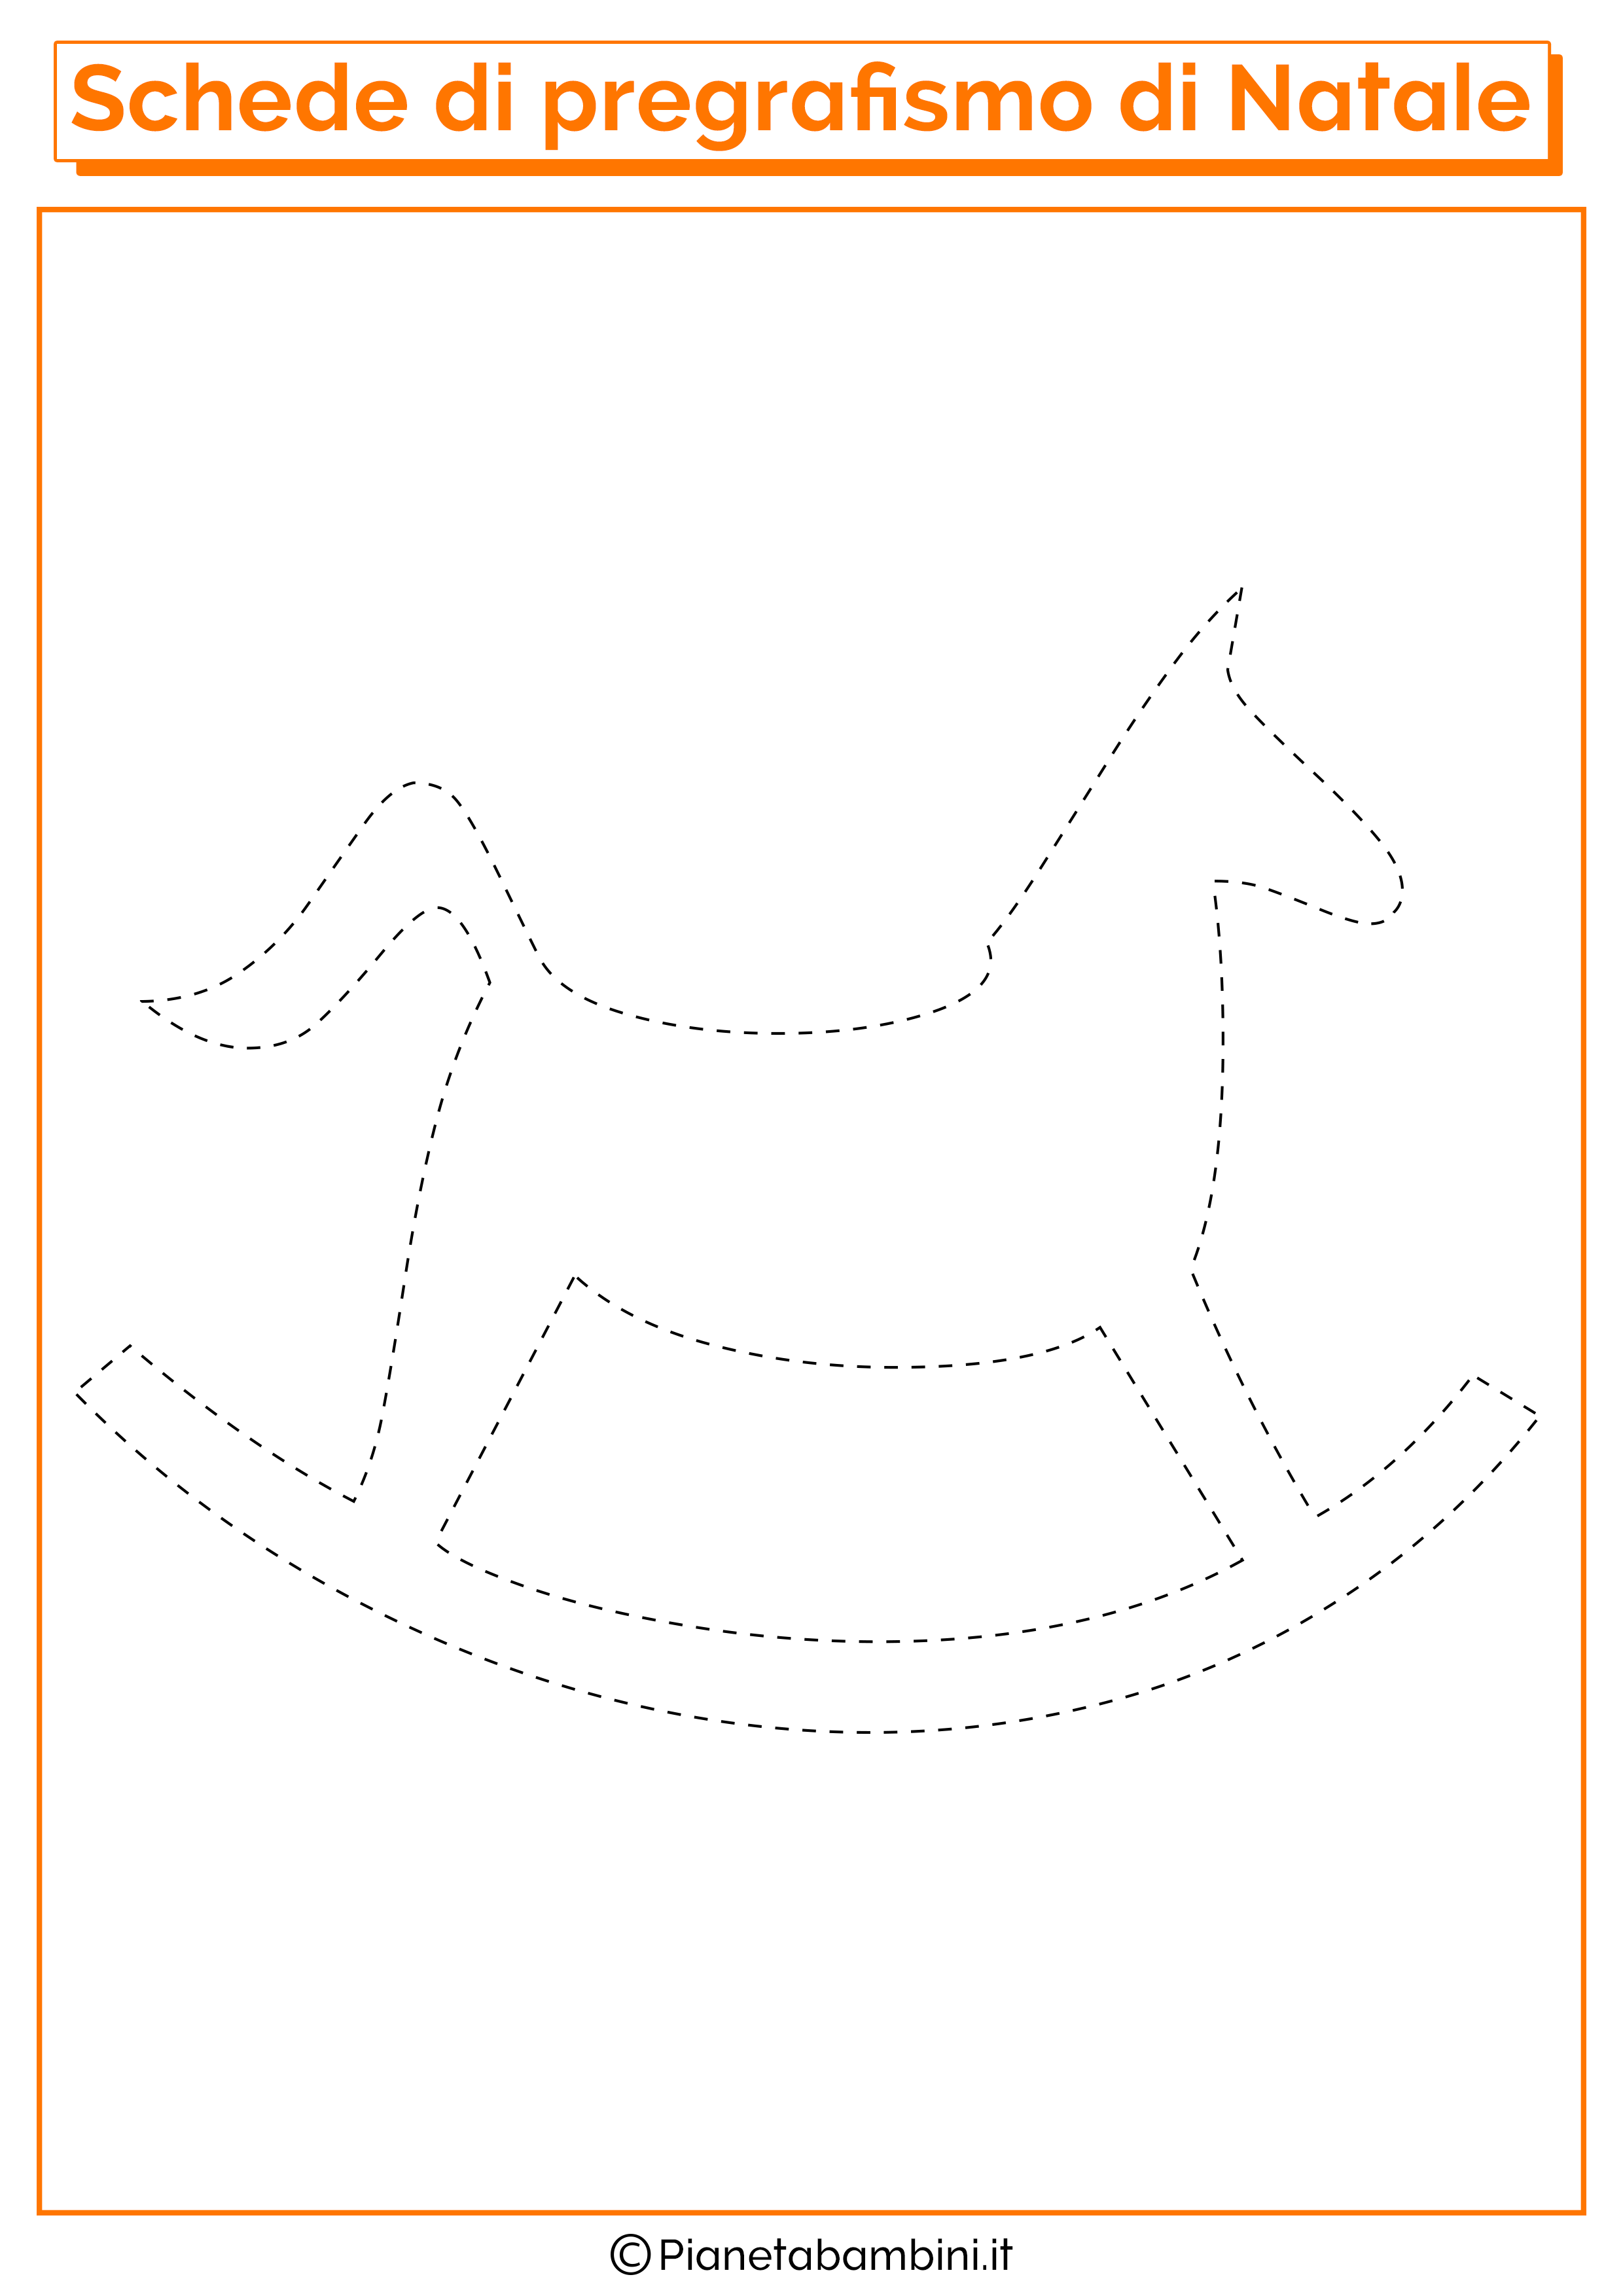 Scheda di pregrafismo cavallo a dondolo